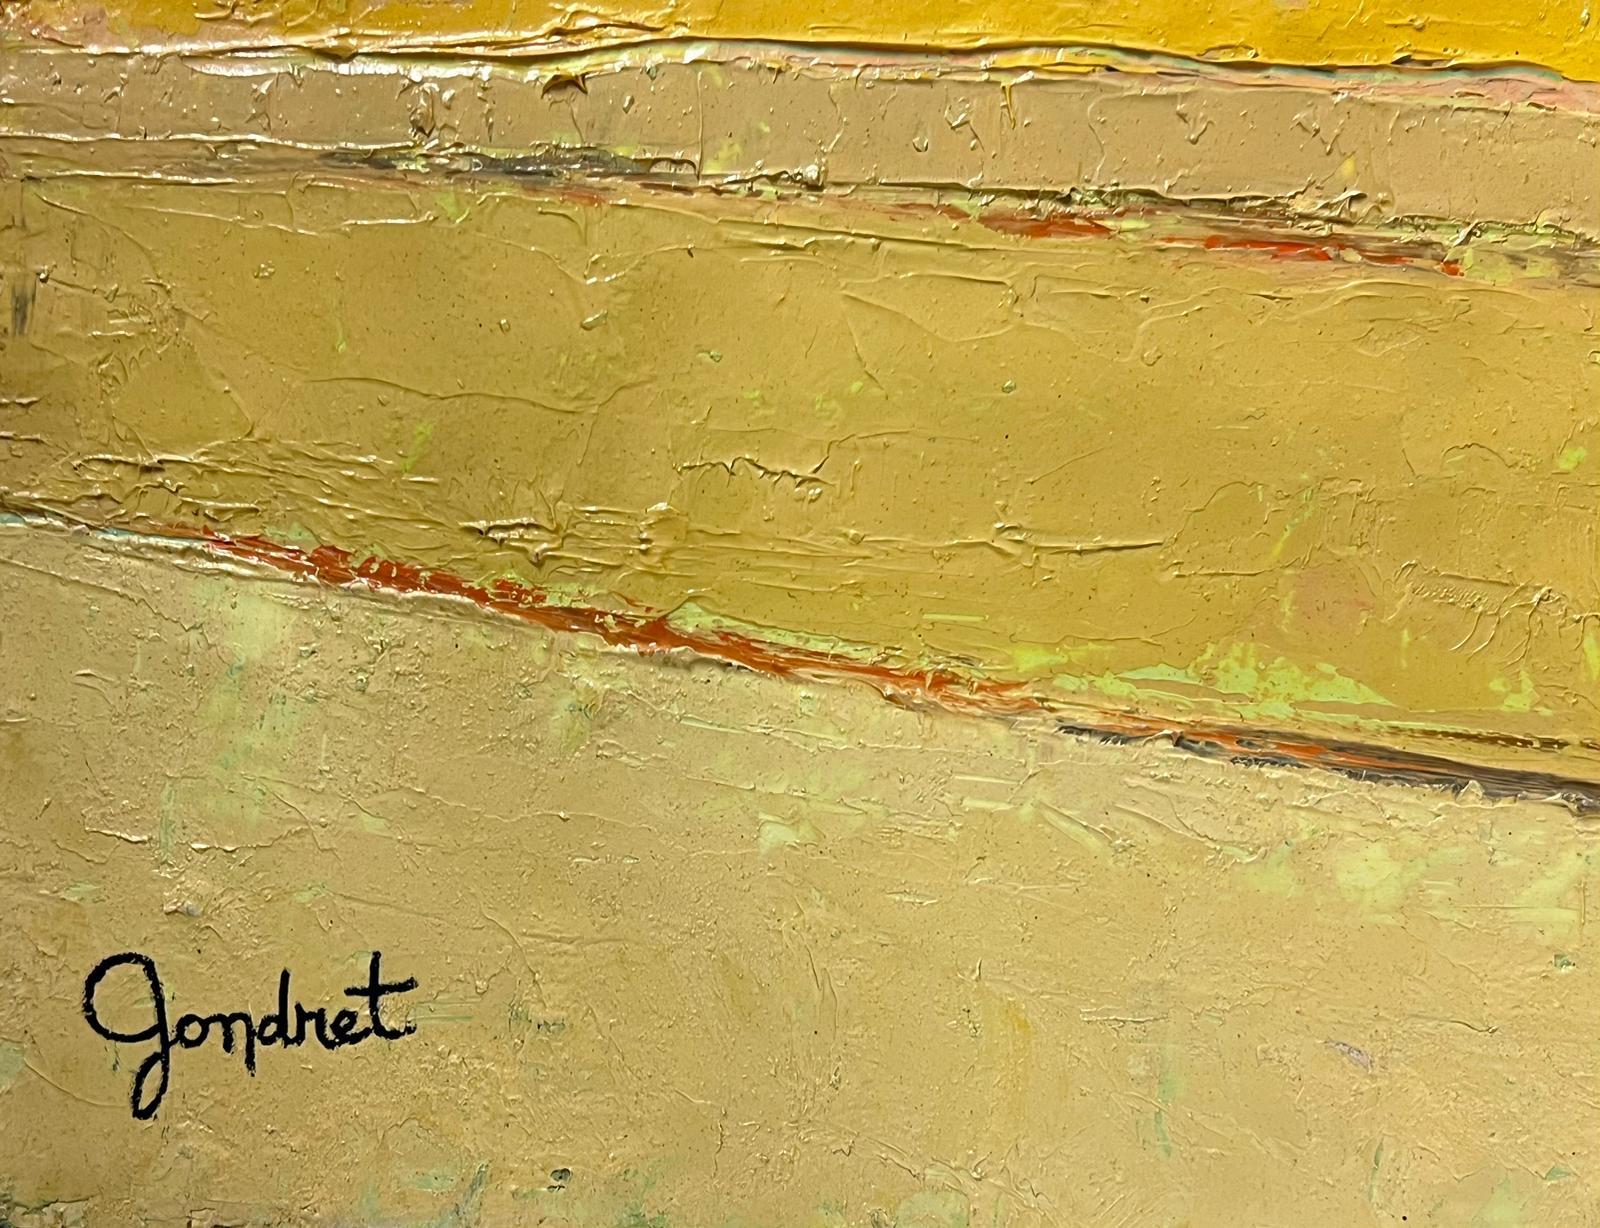 Französisch-modernistisches Ölgemälde des 20. Jahrhunderts, gelbes Landschaftsgemälde, kubistische Komposition (Moderne), Painting, von Lucien Gondret